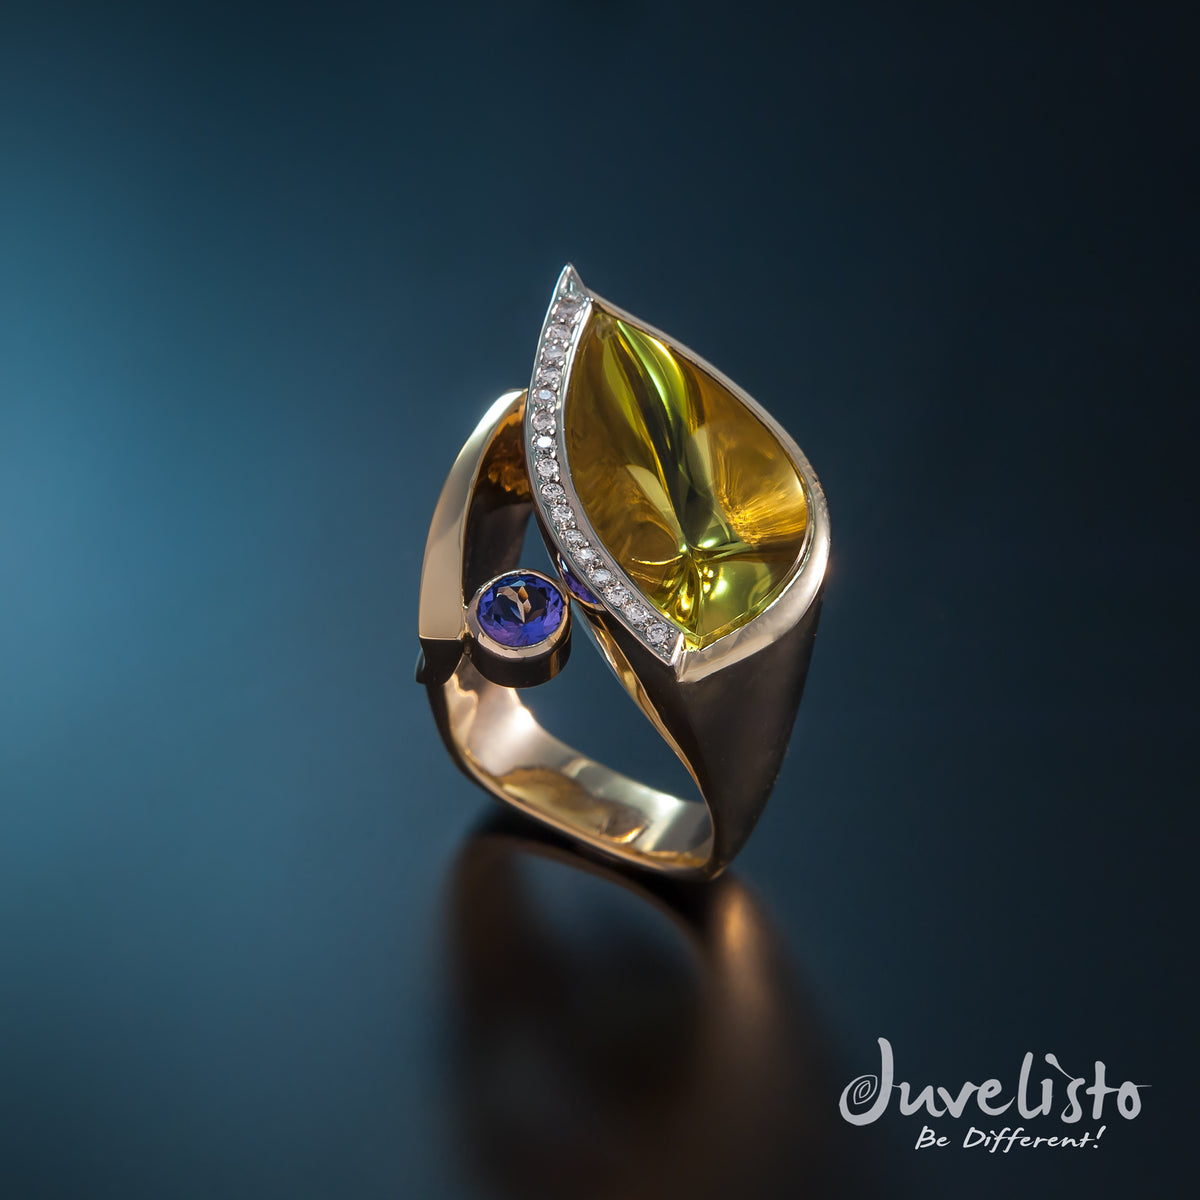 14kt Gold Ring with Lemon Quartz, Tanzanite &amp; Diamonds - Juvelisto - Ring - Juvelisto Design